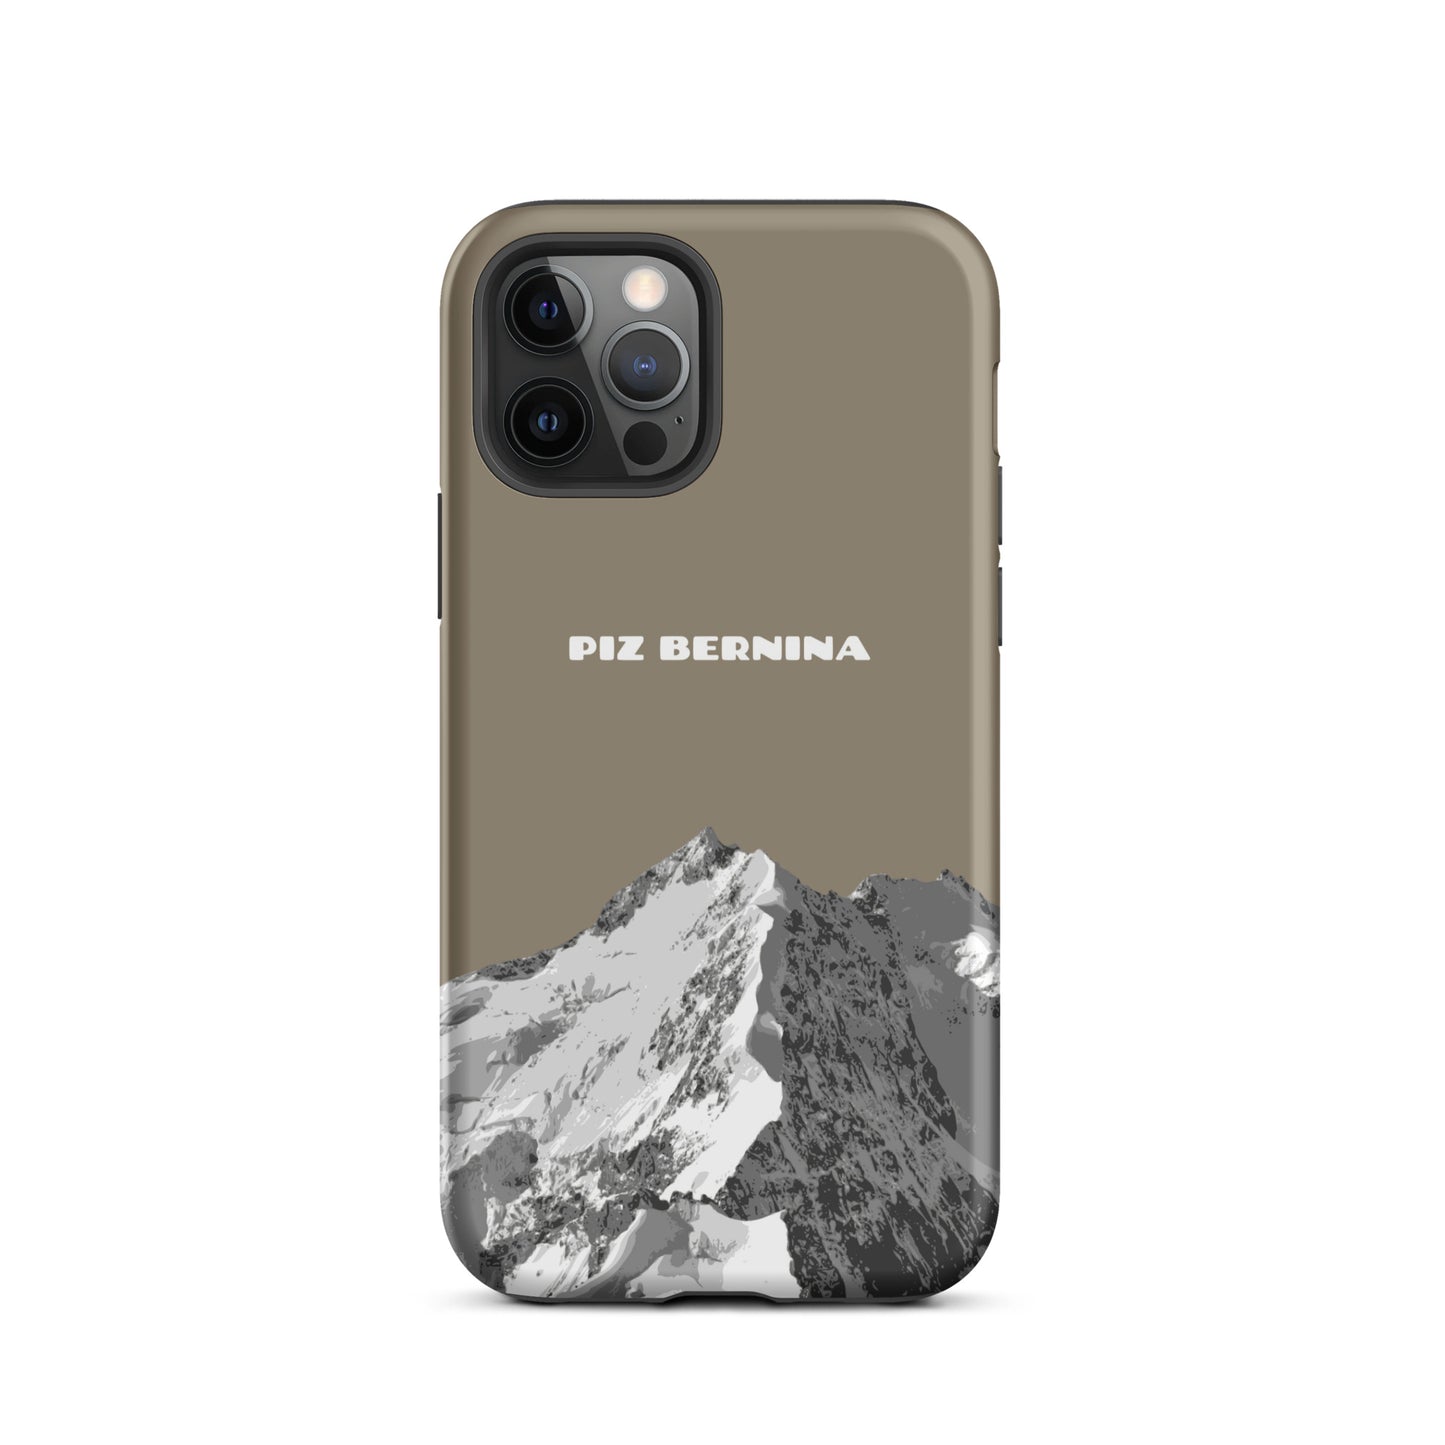 Hülle für das iPhone 12 Pro von Apple in der Farbe Graubraun, dass den Piz Bernina in Graubünden zeigt.